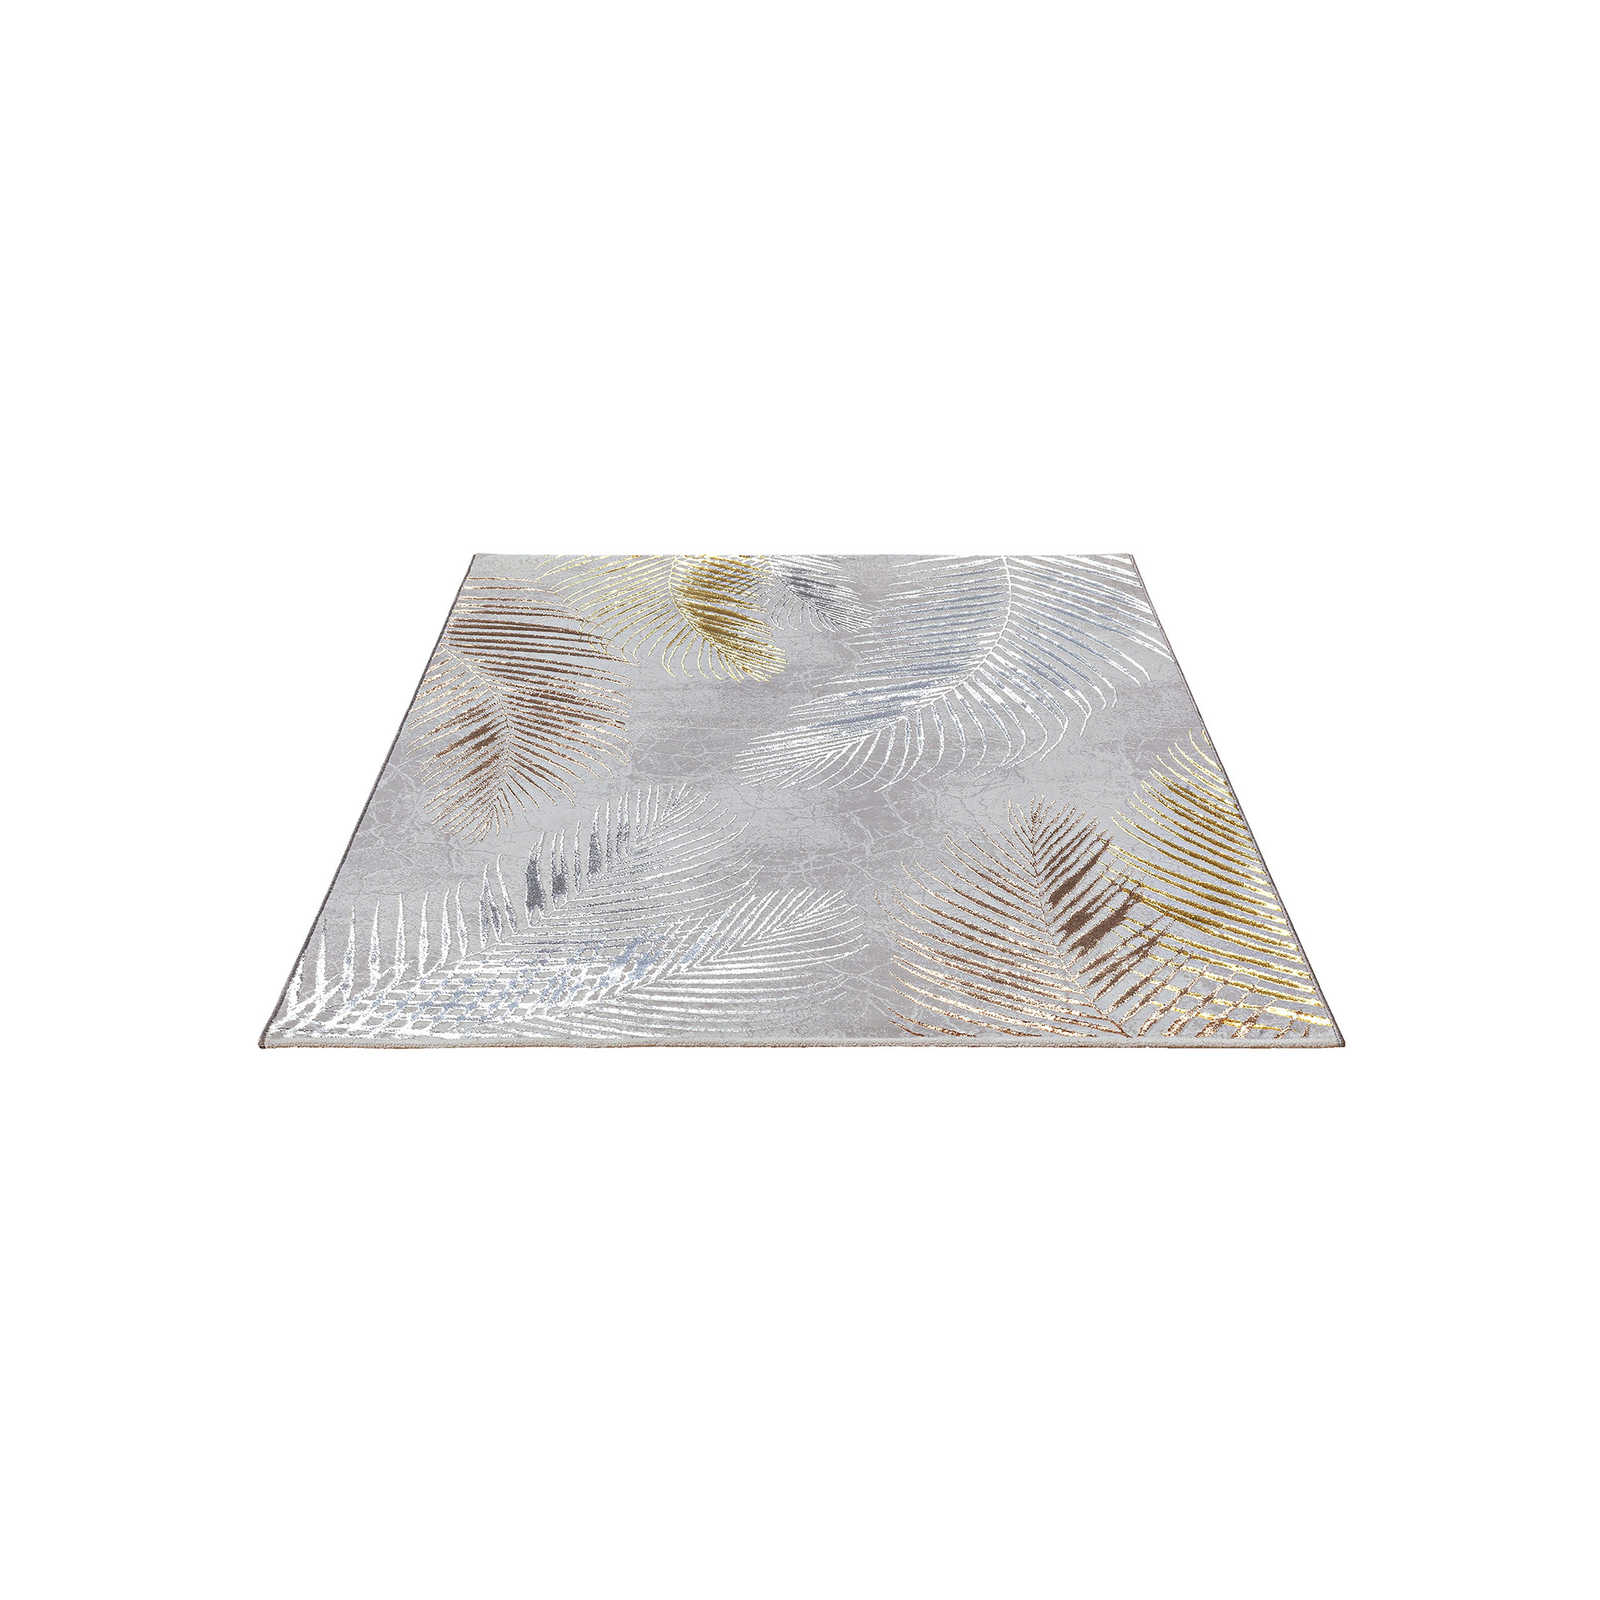 Morbido tappeto a pelo alto in grigio come tappeto da rivestimento - 230 x 160 cm
